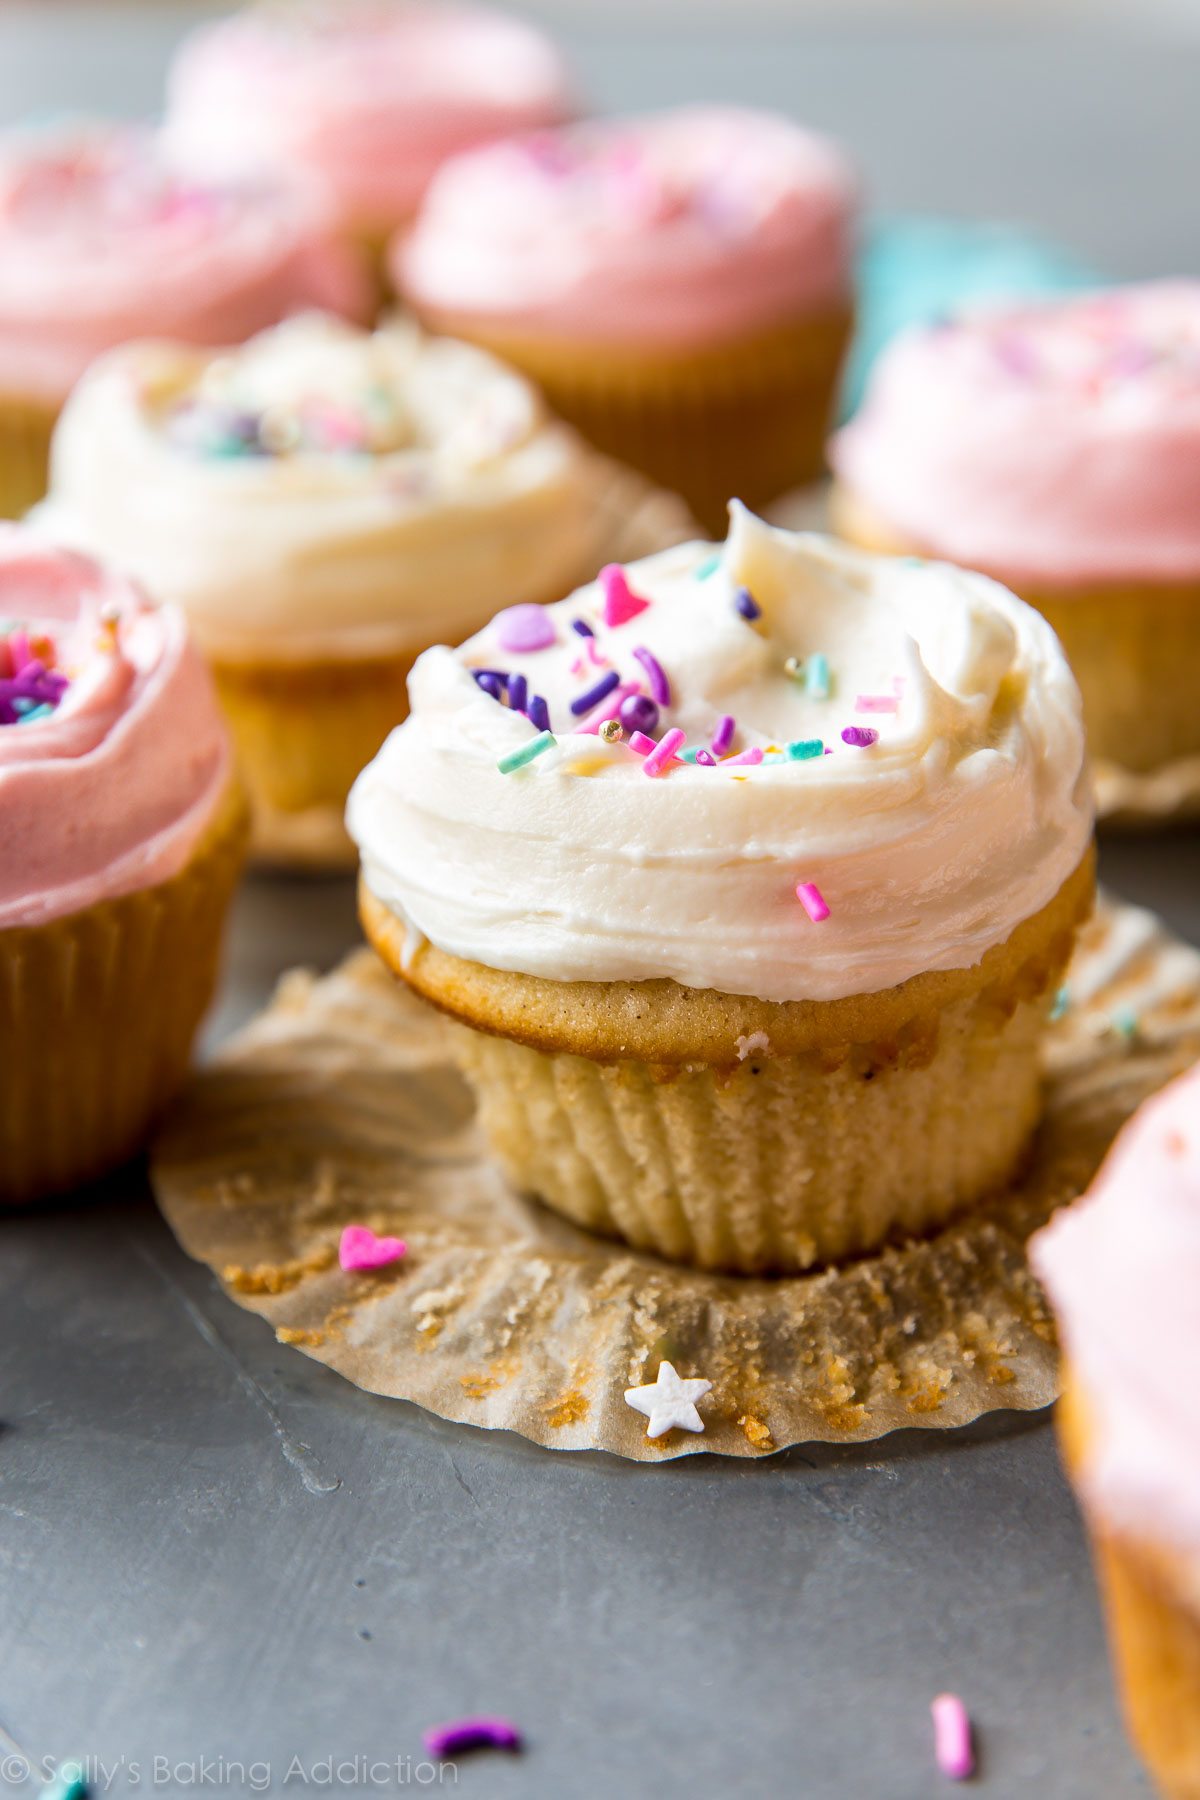 Cupcakes à la vanille moelleux, doux, légers et tout simplement parfaits. Ils seront votre nouvelle recette de cupcake maison à la vanille! sallysbakingaddiction.com